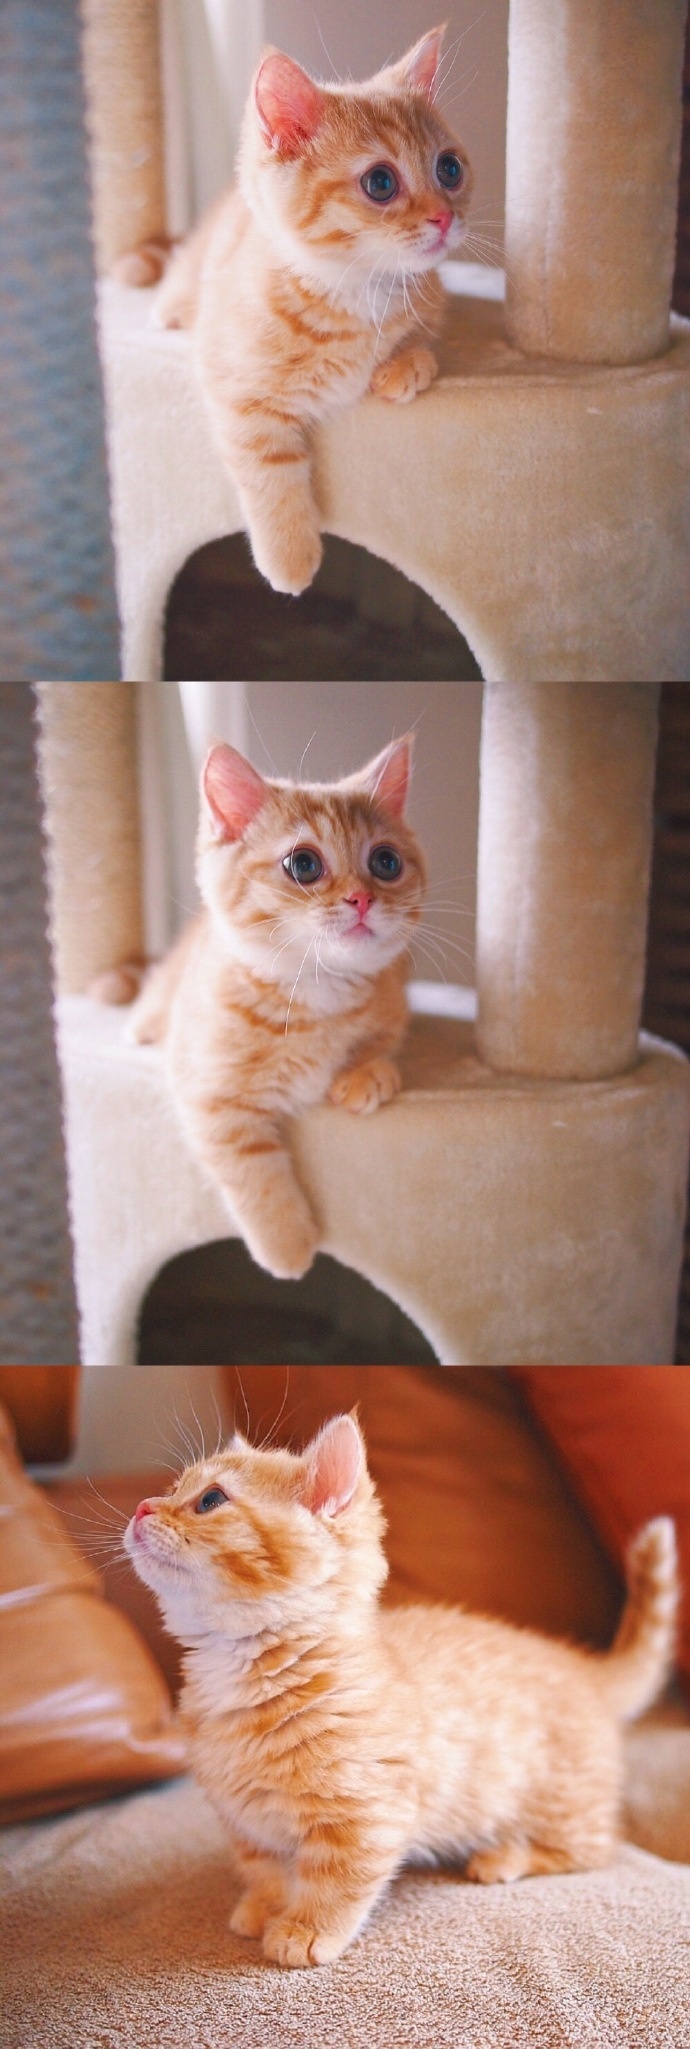 猫的图片可爱 很萌的橘猫图片(5)